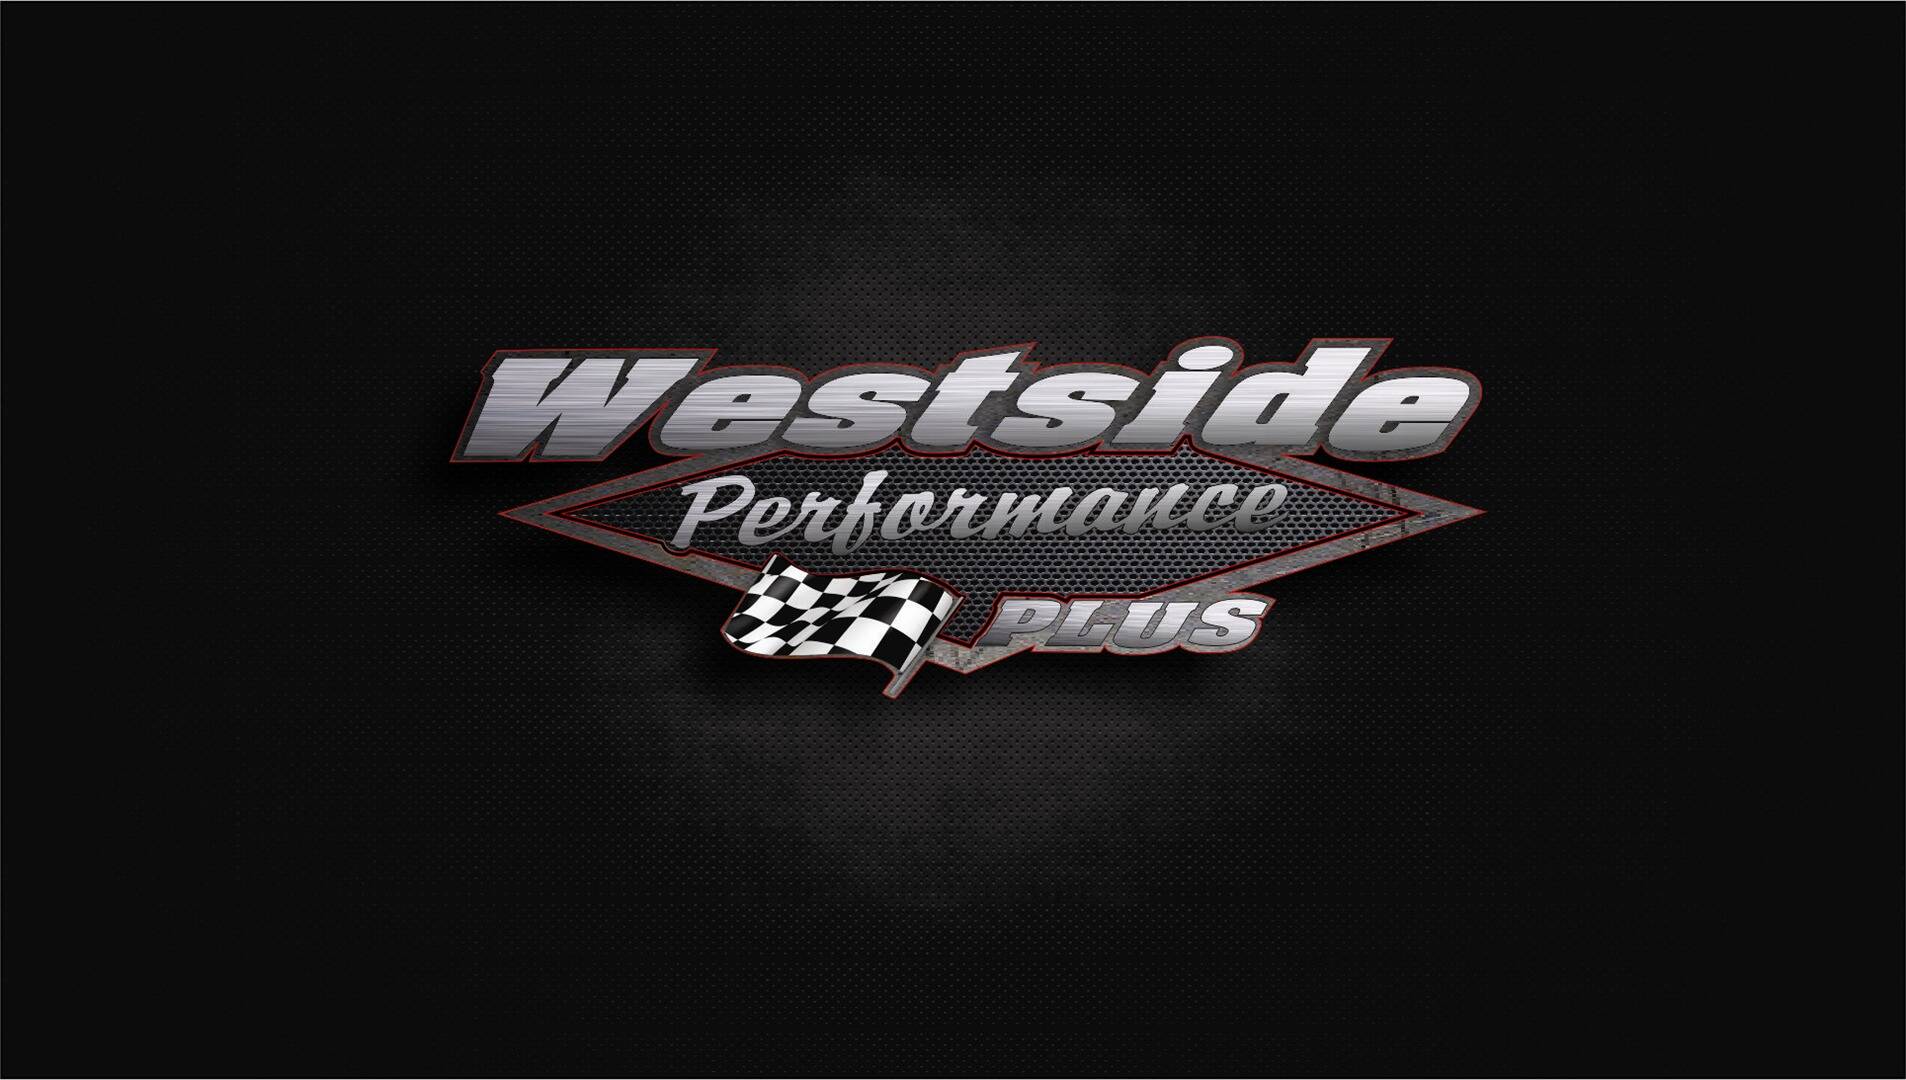 Westside Performance Plus